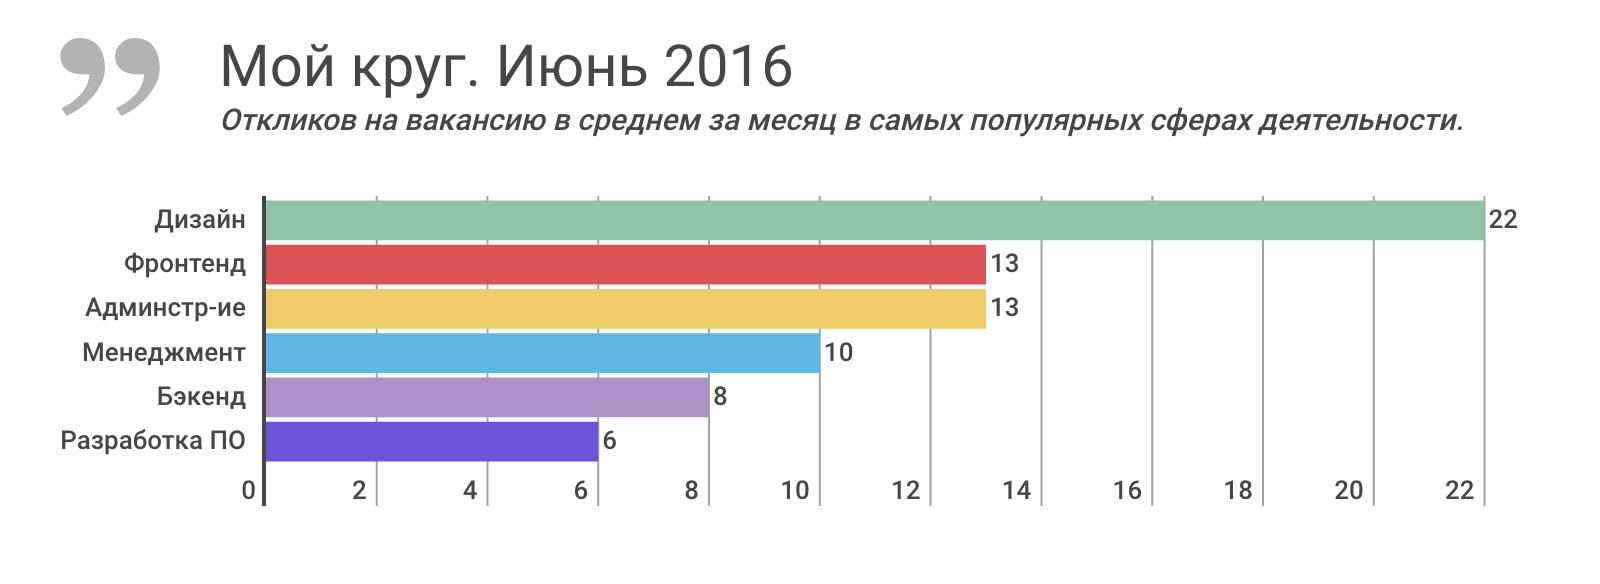 Отчет о результатах «Моего круга» за июнь 2016, и самые популярные вакансии месяца - 1